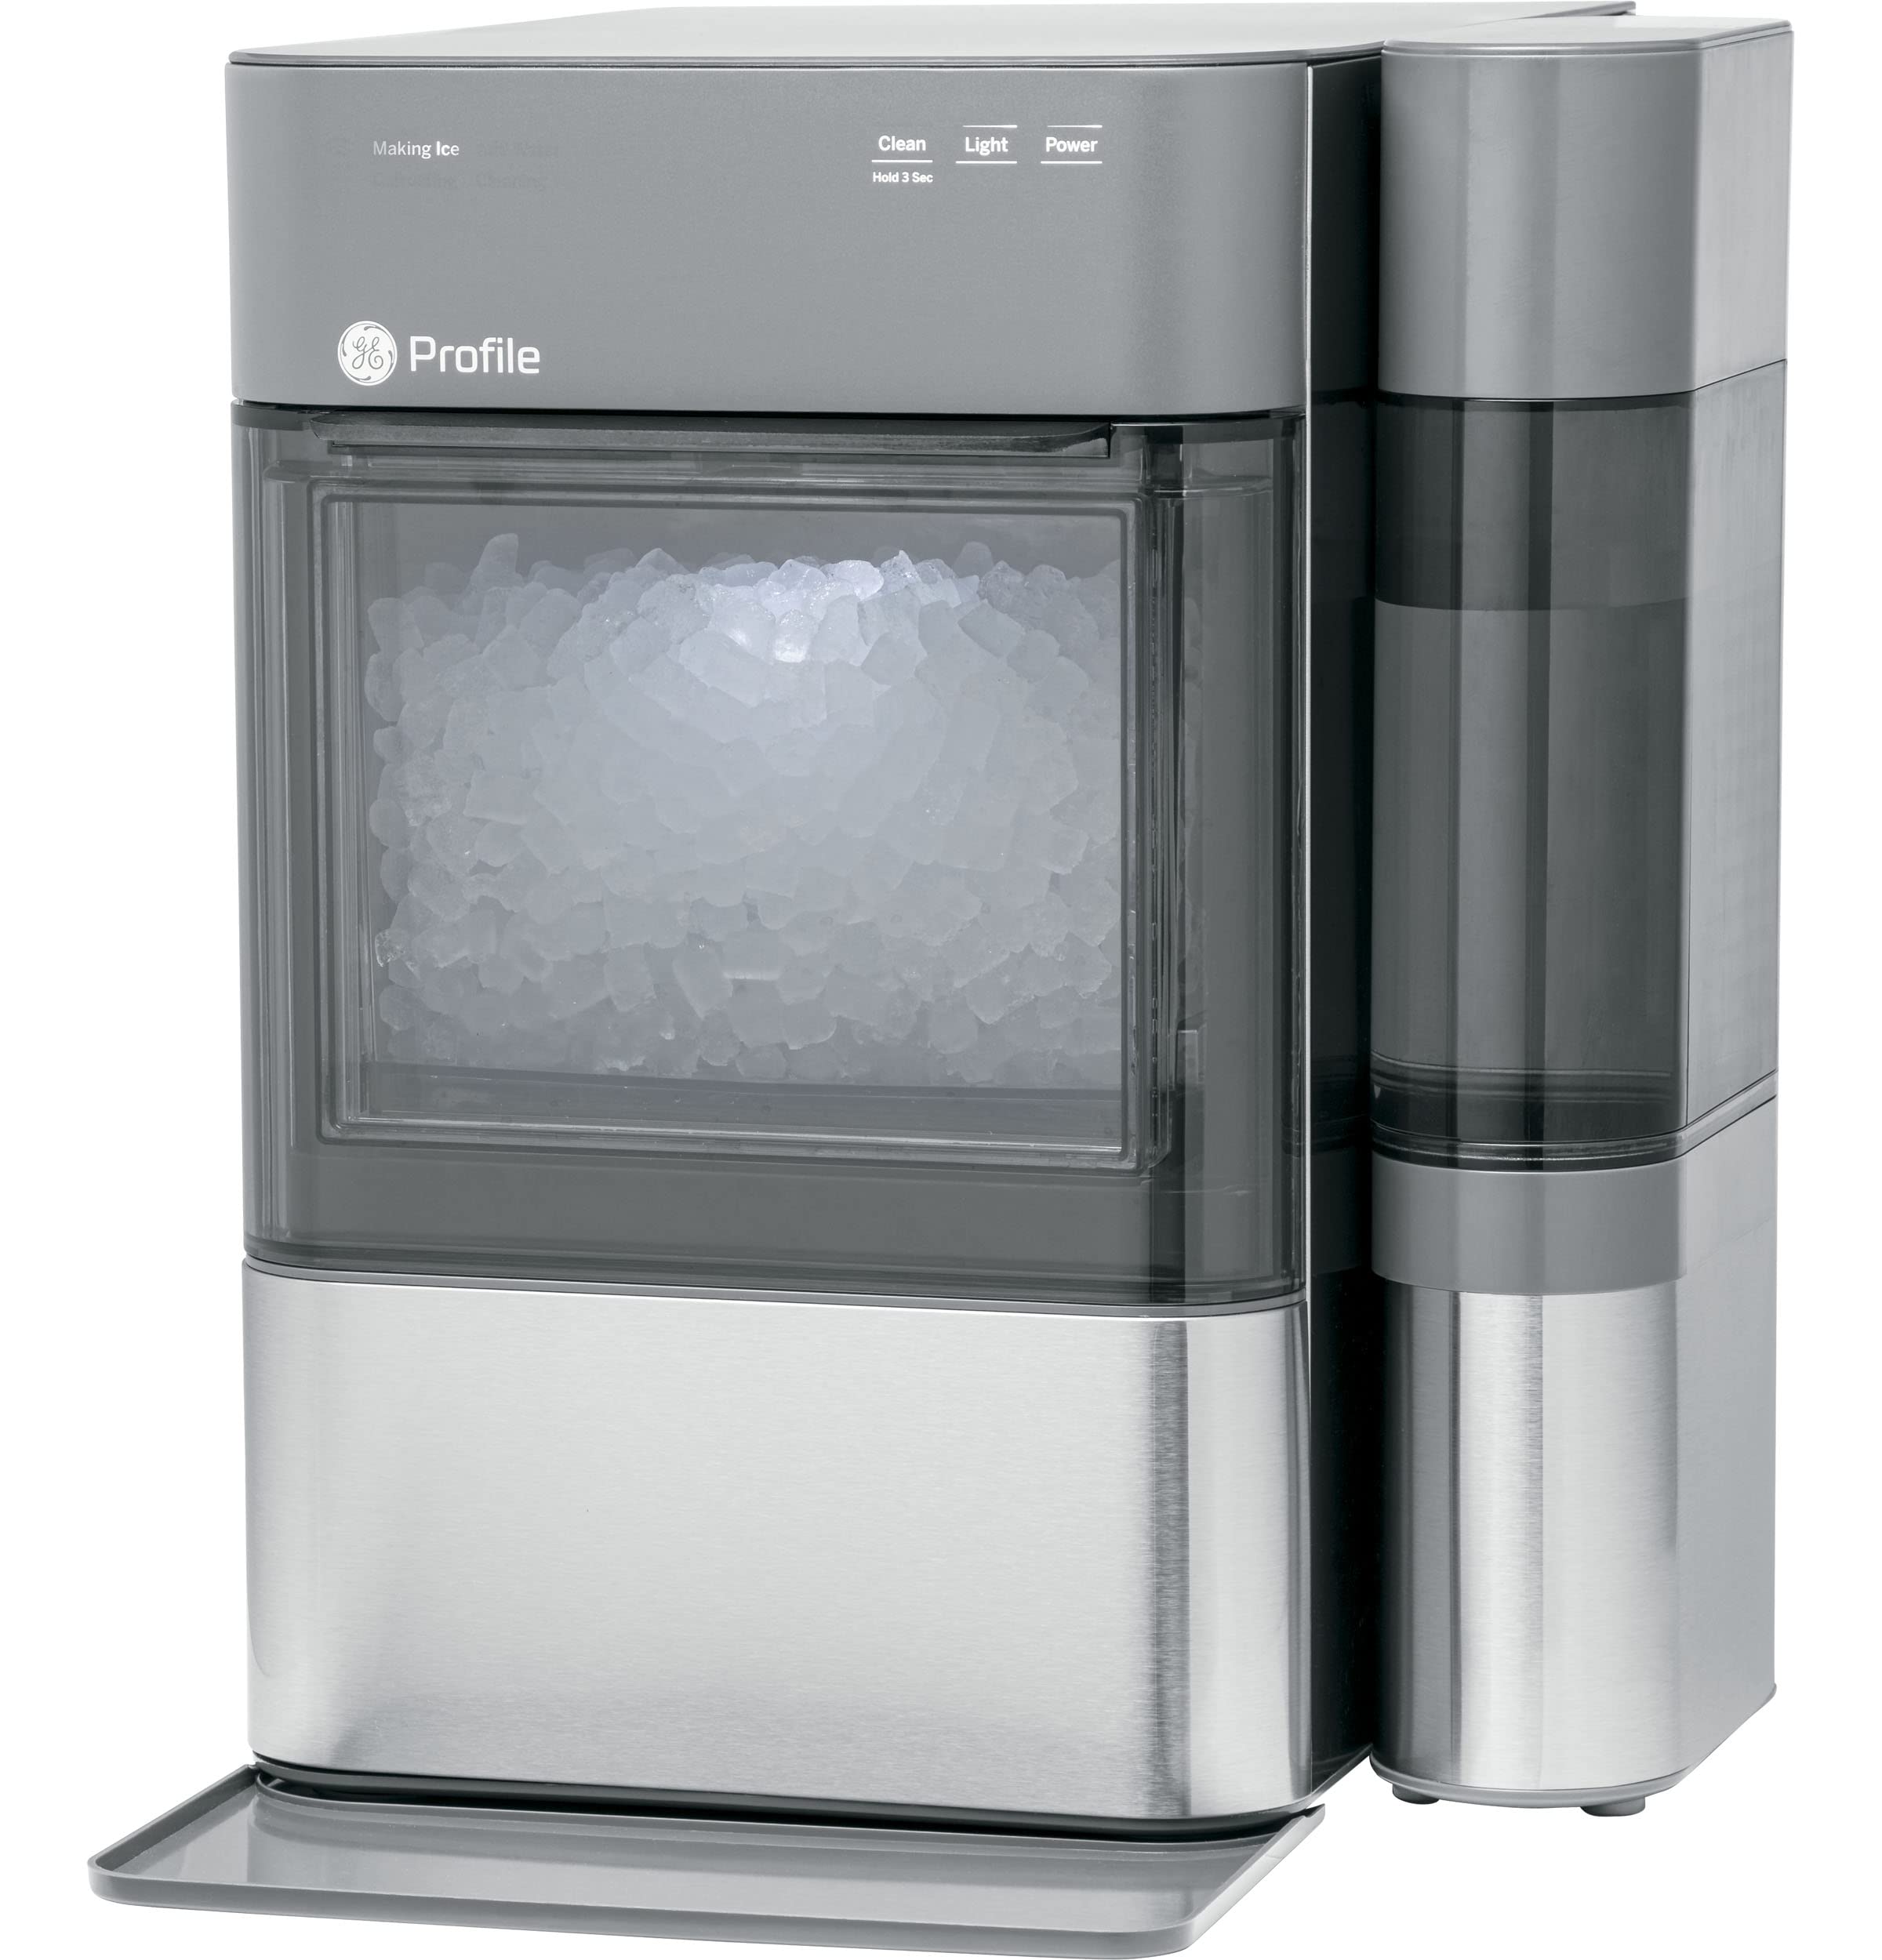 GE Opal 2.0 | Aufsatz-Nugt-Eisbereiter mit seitlichem Tank | Eismaschine mit WiFi-Konnektivität | Smart-Home-Küchen-Essentials | Edelstahl